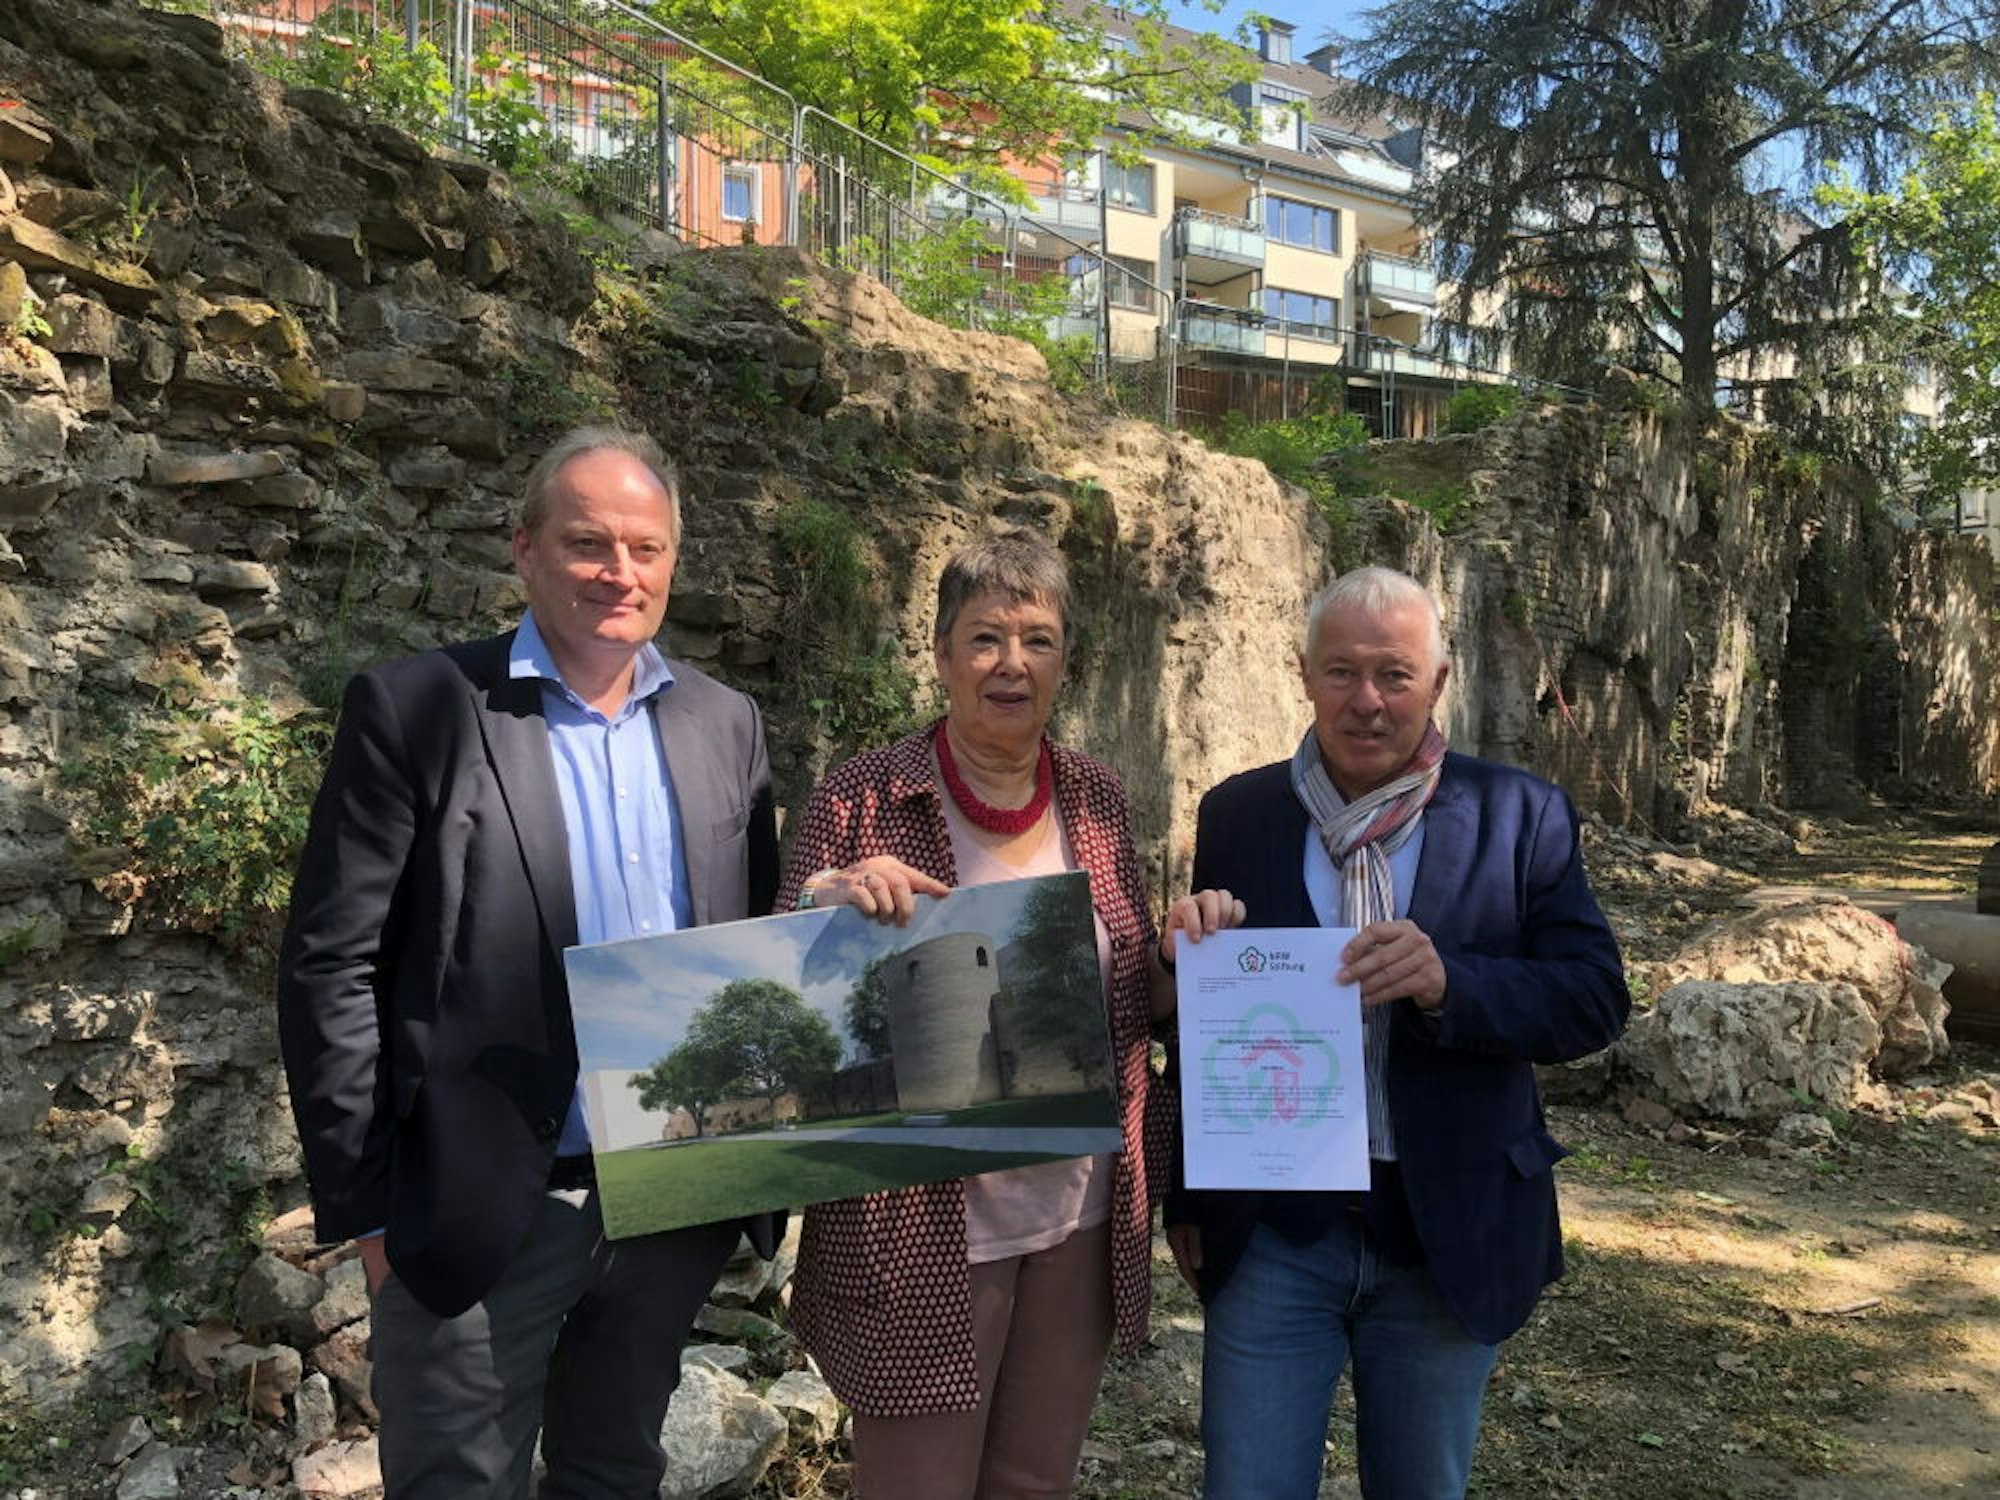 Karl-Heinz Erdmann von der NRW-Stiftung (r.) mit Barbara Schock-Werner und Marcus Trier (l.) vor der Römermauer.